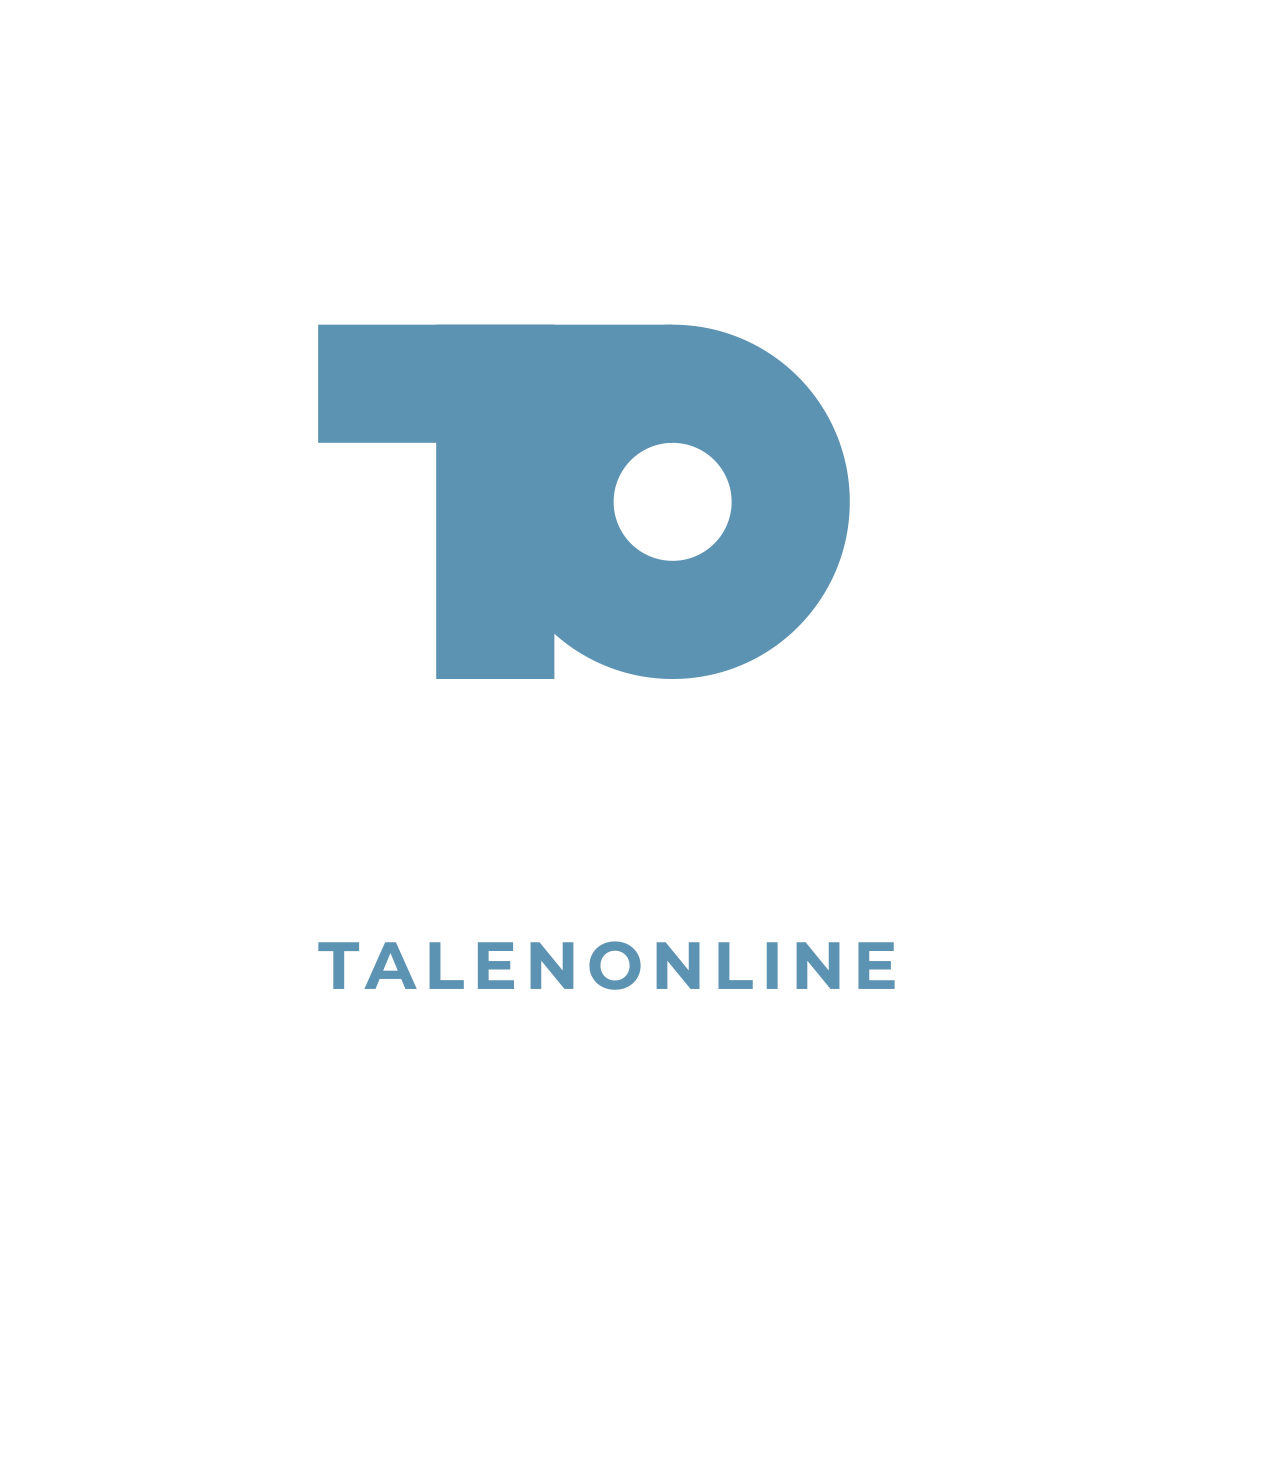 Talenonline